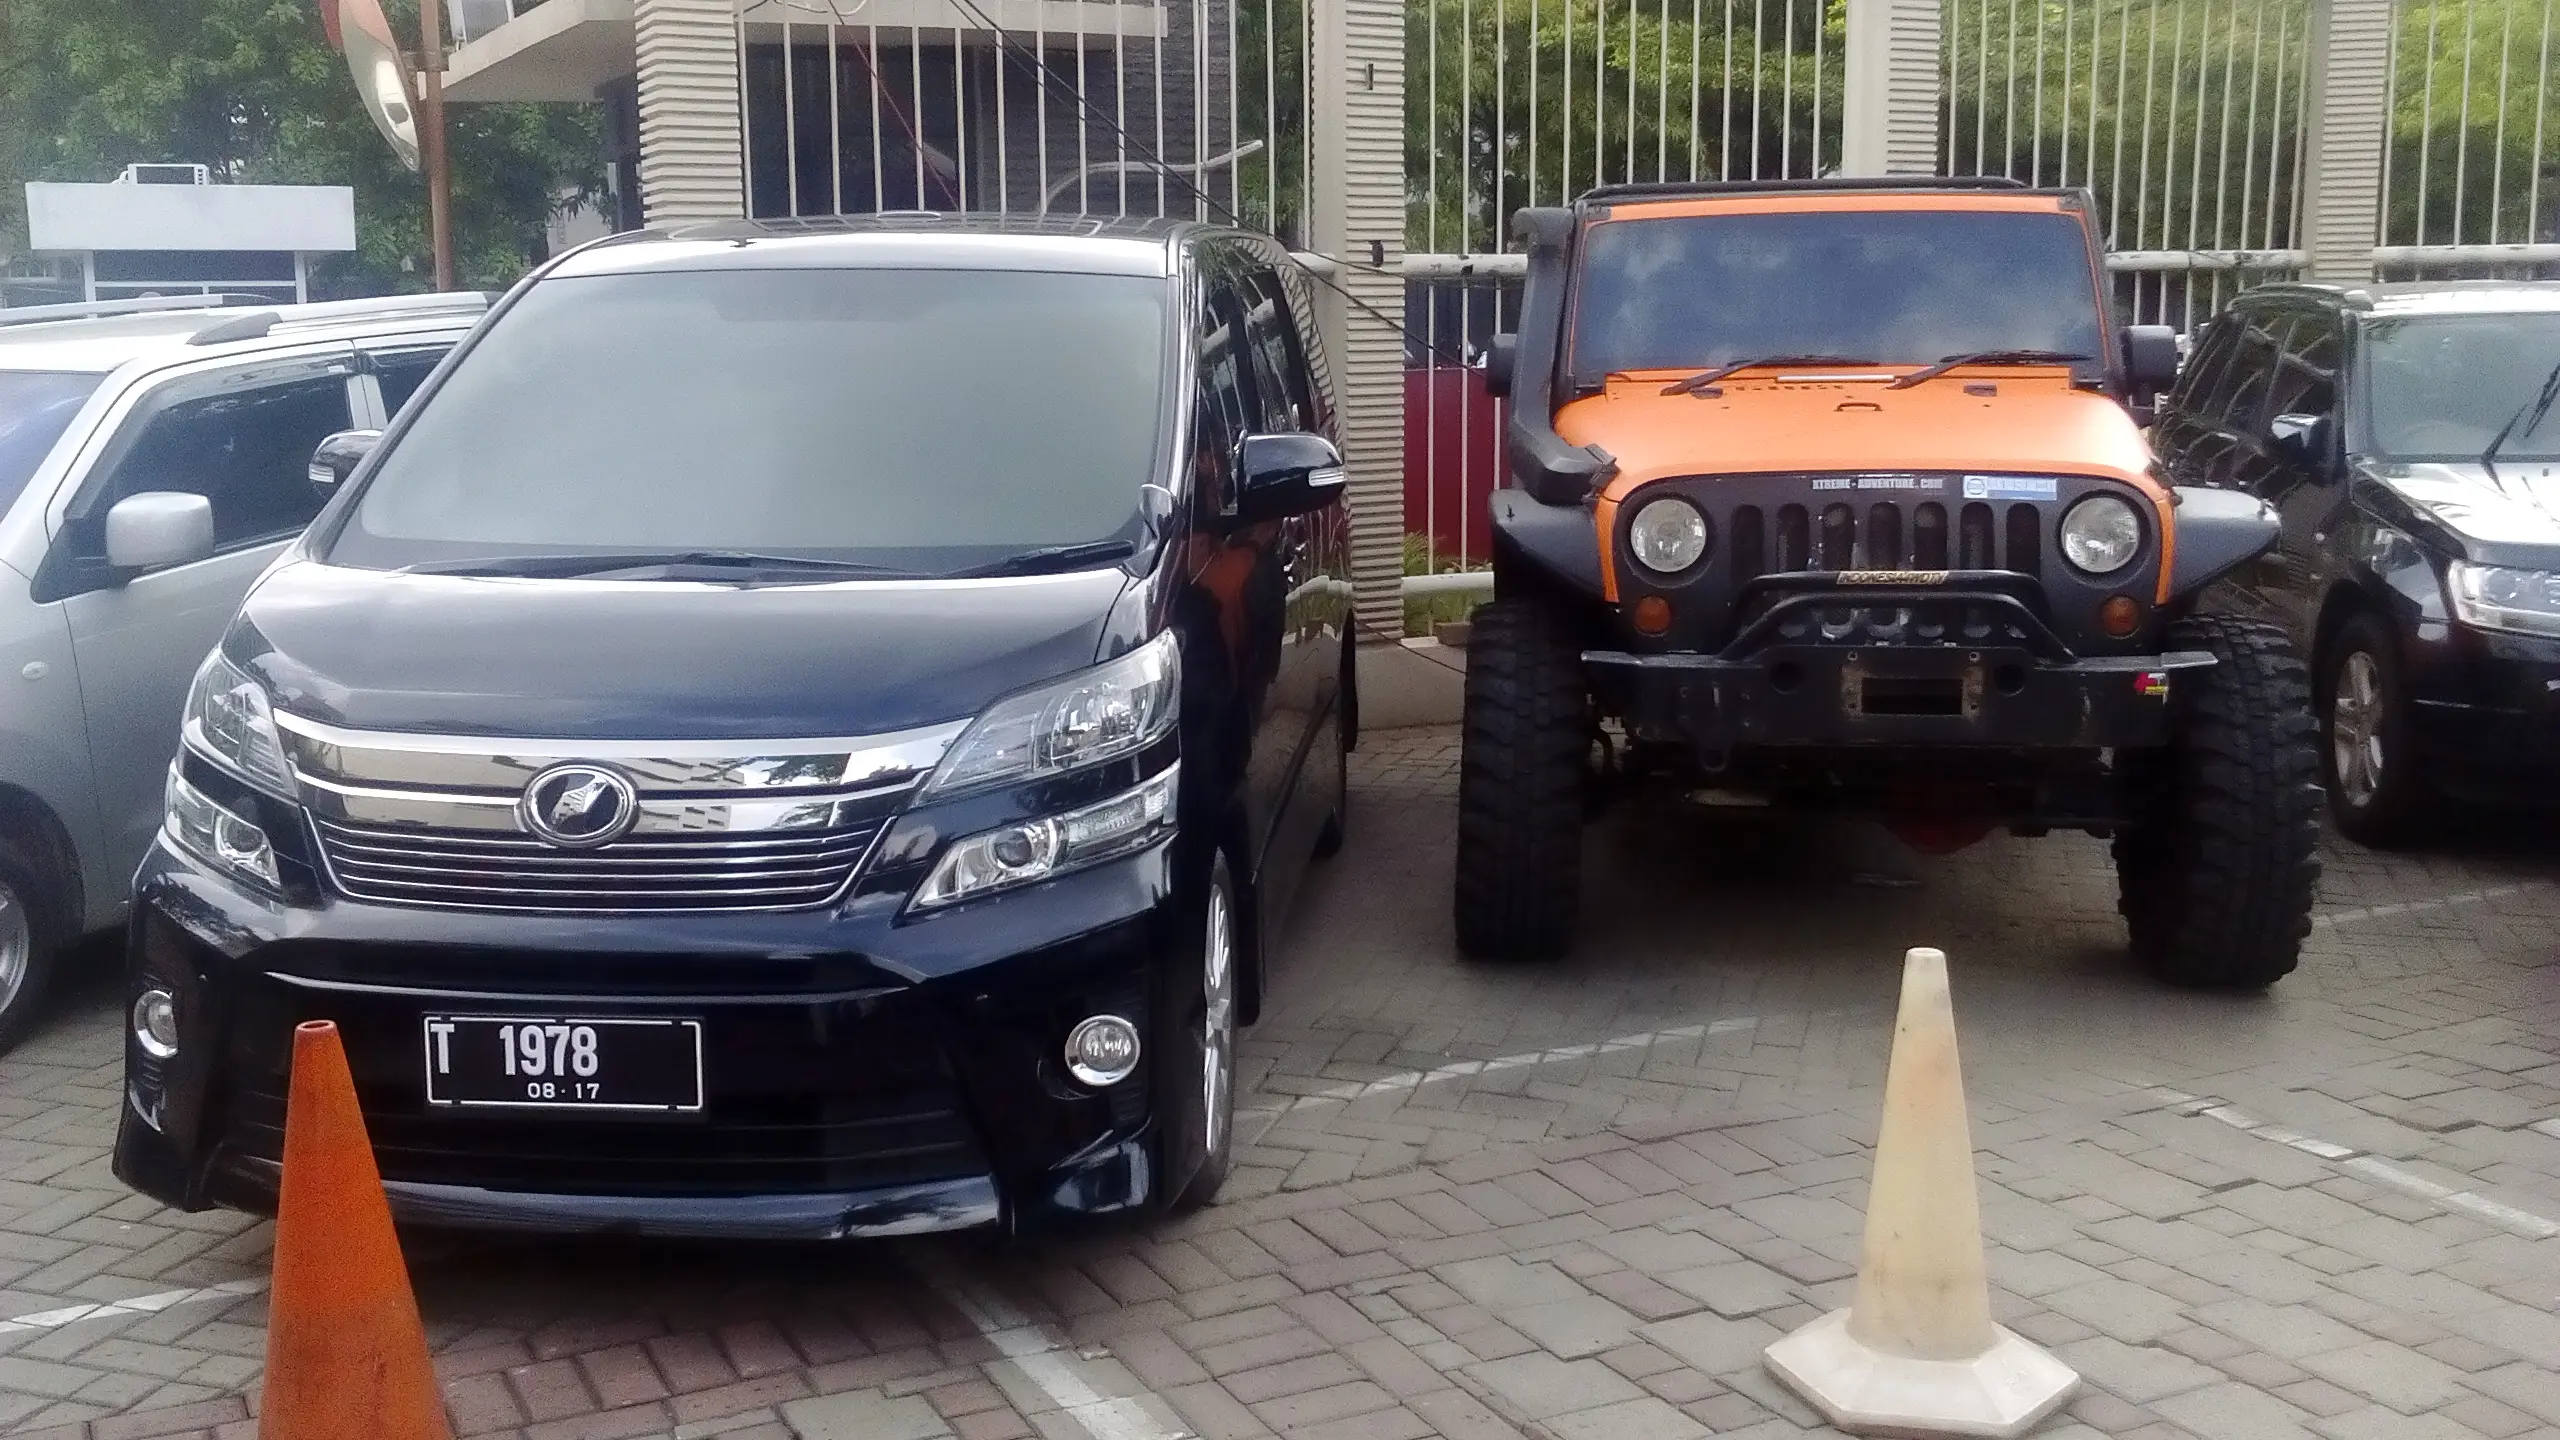 2 Mobil milik Bupati Subang Ojang Suhandi yang disita KPK karena diduga hasil gratifikasi. (Liputan6.com/Putu Merta Surya Putra)